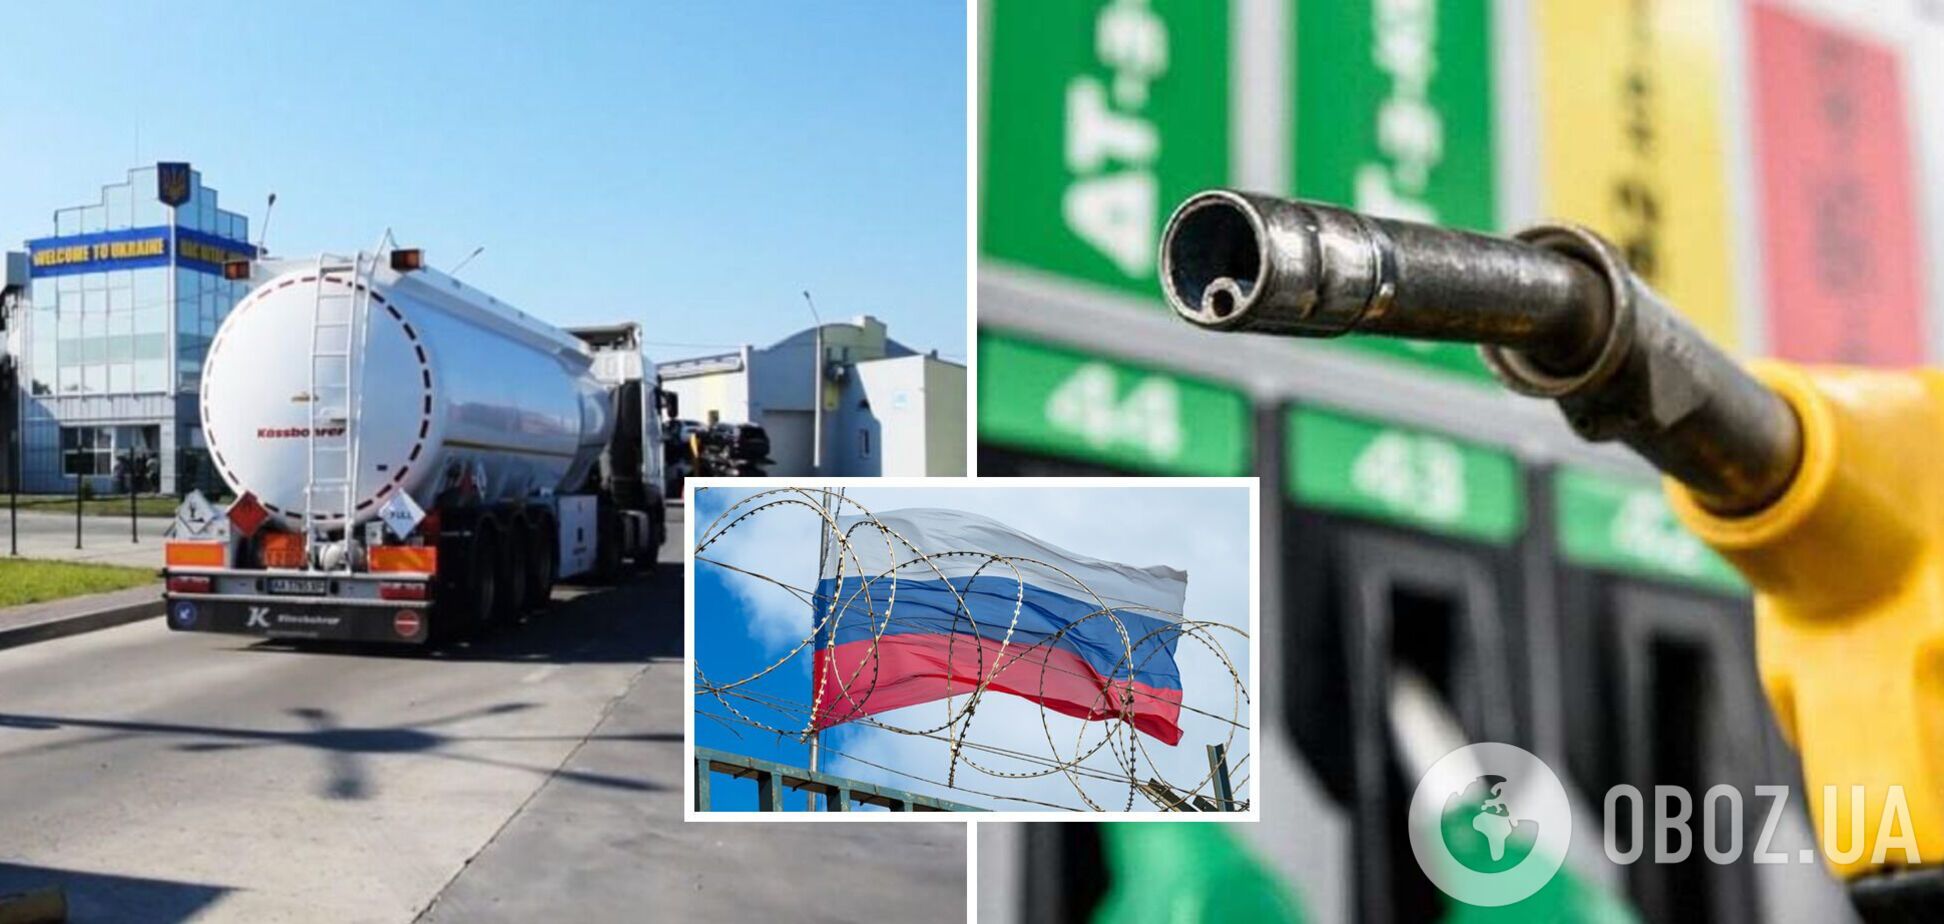 Ціни на автогаз в Україні знизилися через потрапляння на ринок російського газу